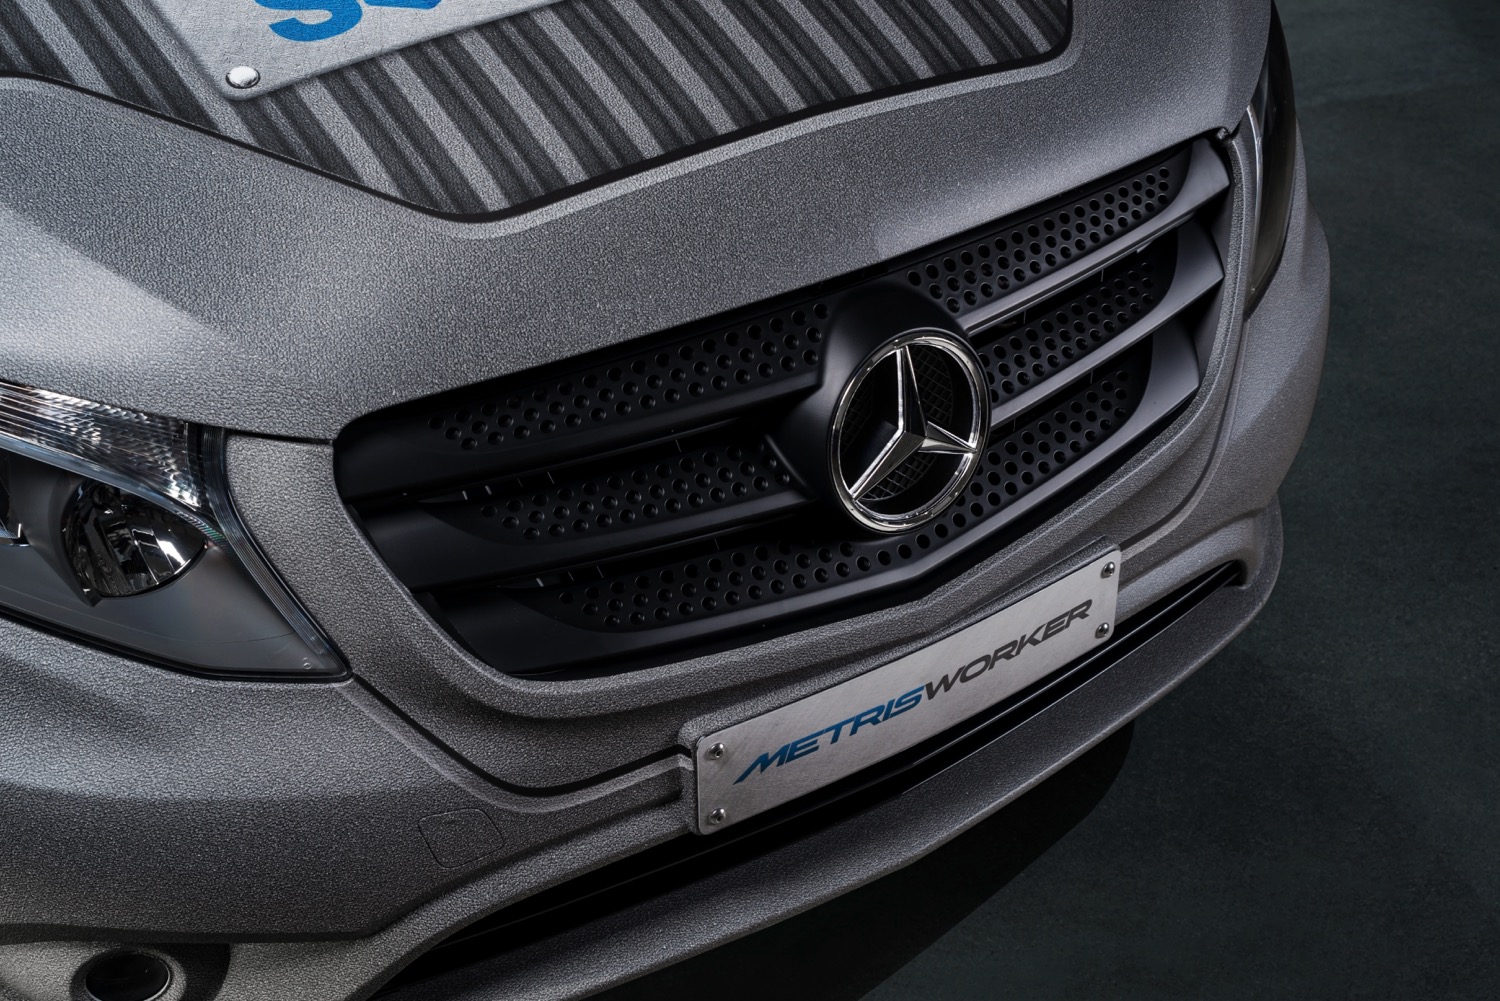 Mercedes-Benz Metris MasterSolutions Toolbox concept